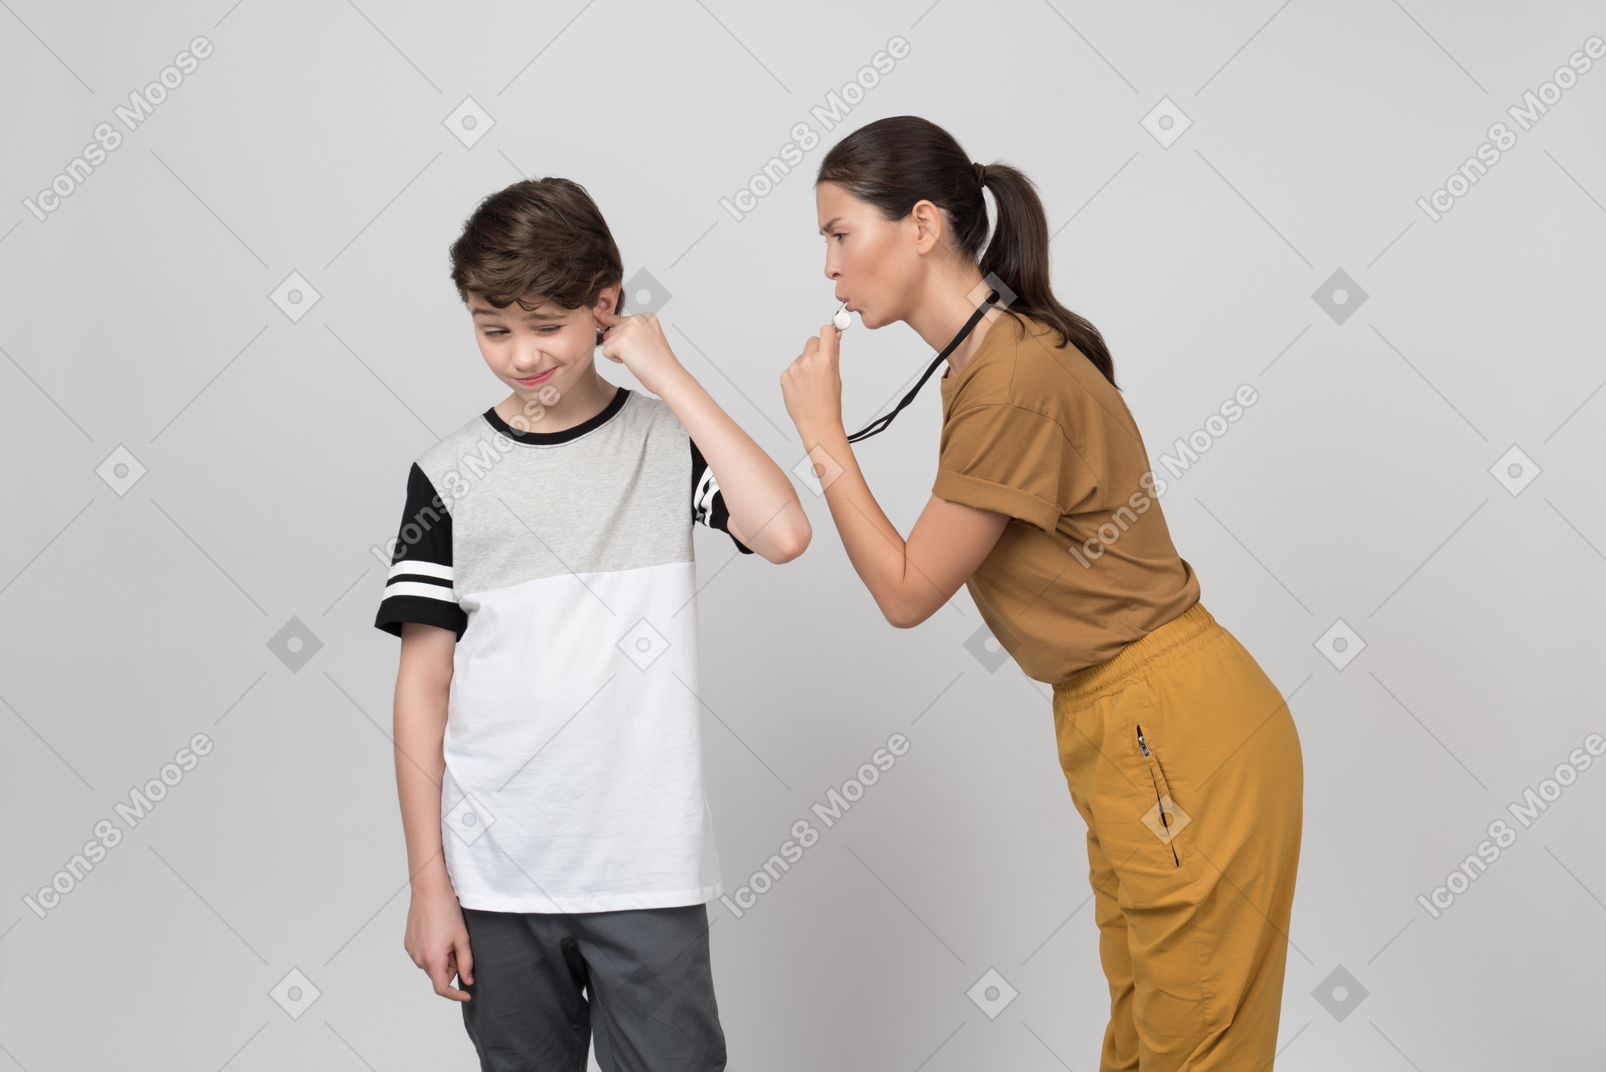 Учитель свистит своему ученику, пока он закрывает ухо